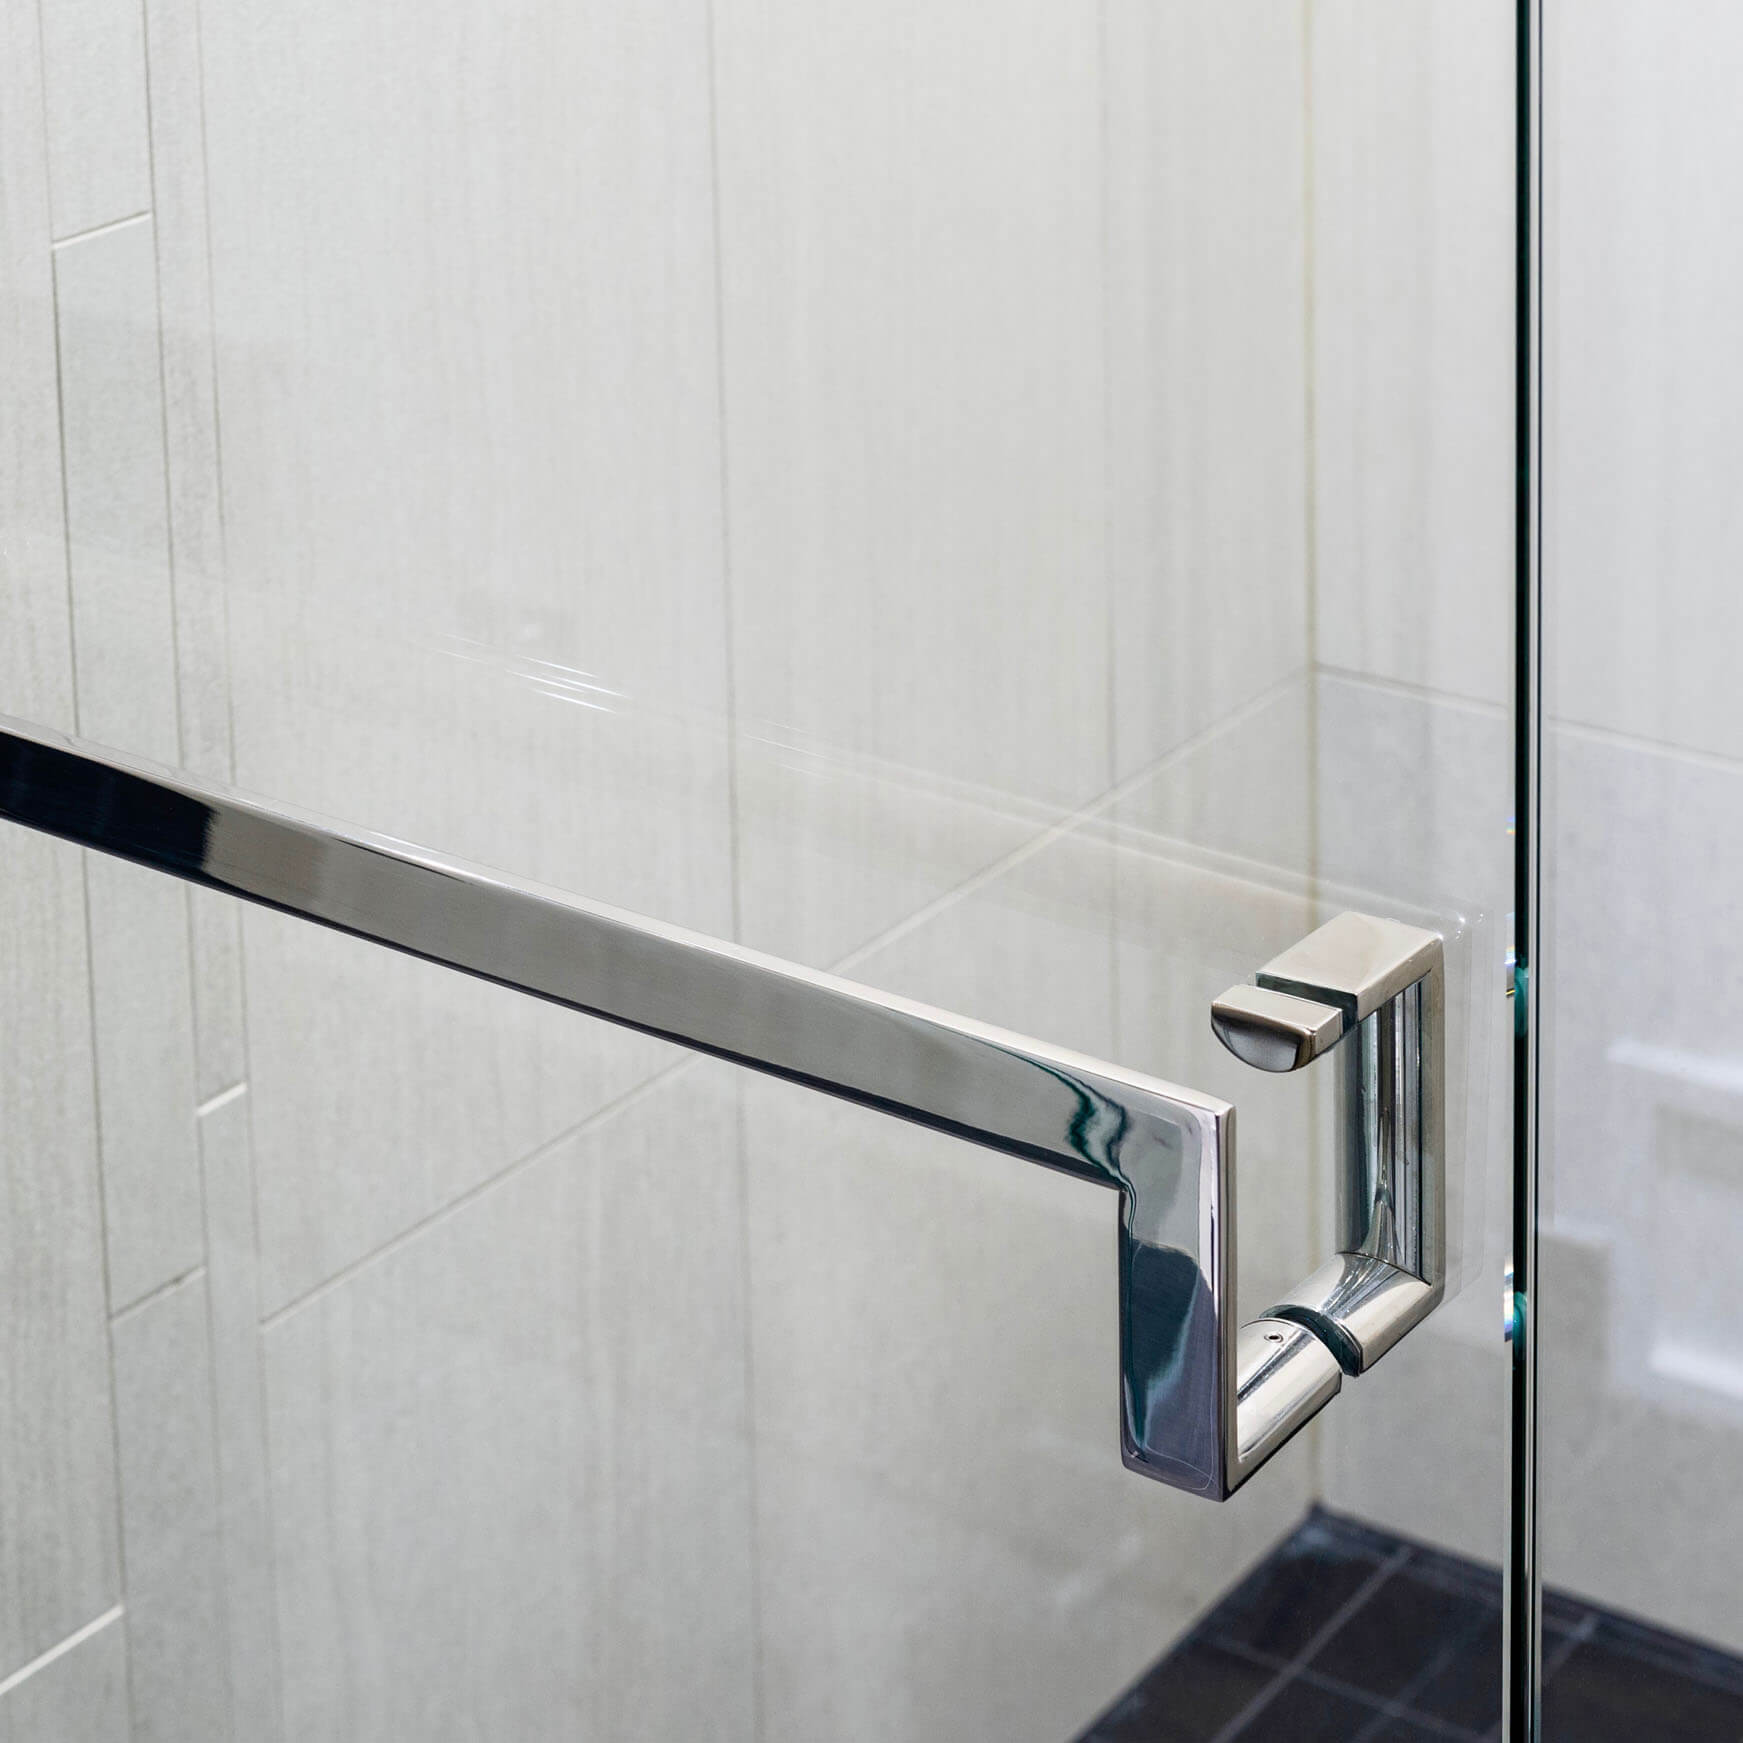 https://jwlhome.com/wp-content/uploads/2022/01/polished-shower-door-handle-and-towel-bar.jpg